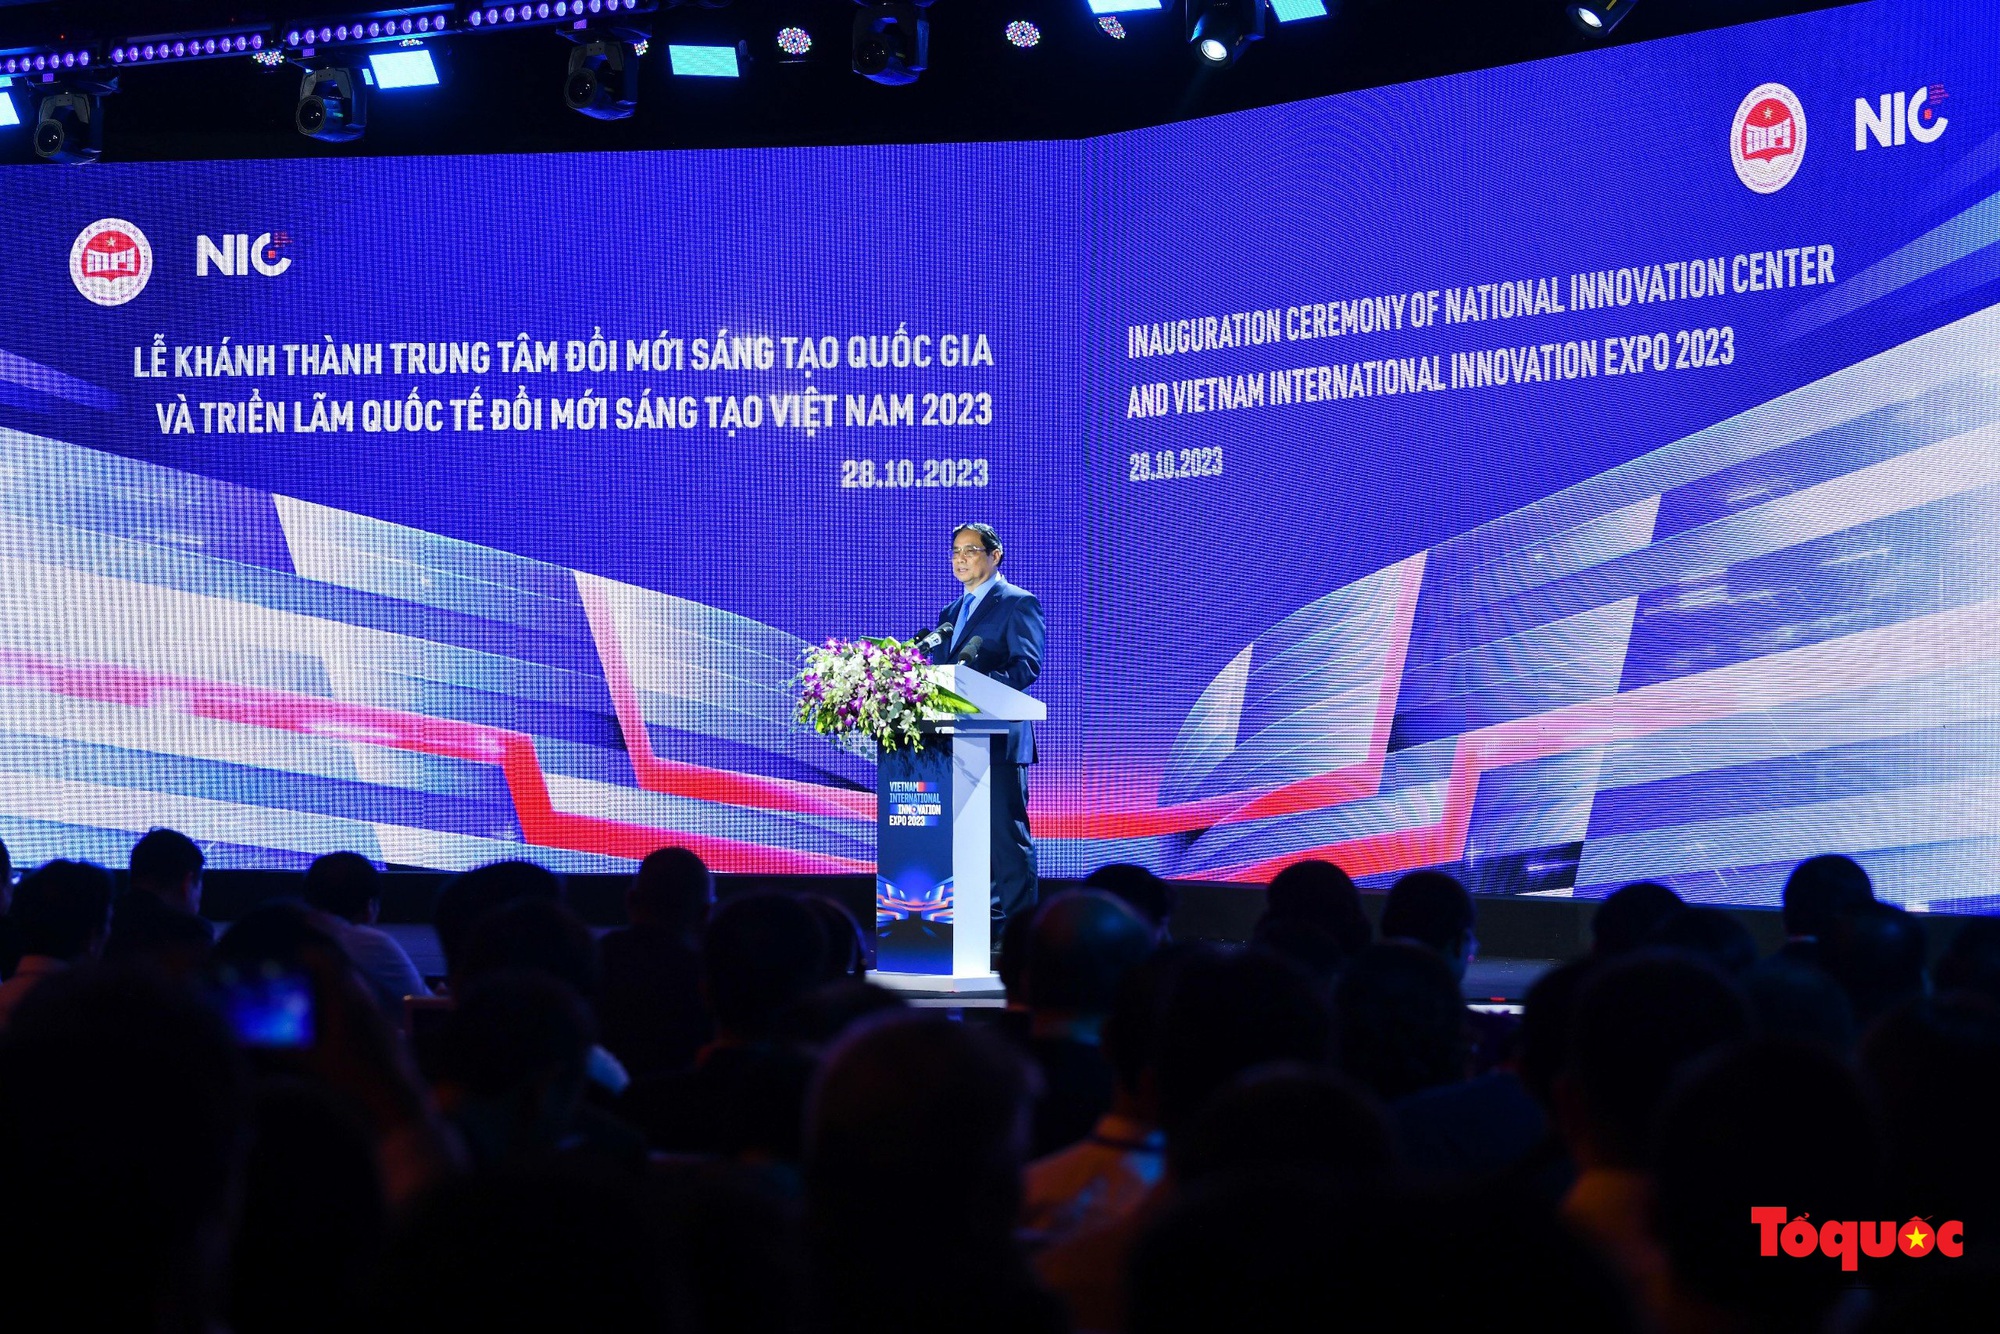 Lễ khánh thành Trung tâm Đổi mới sáng tạo quốc gia và Triển lãm quốc tế Đổi mới sáng tạo Việt Nam 2023 - Ảnh 14.